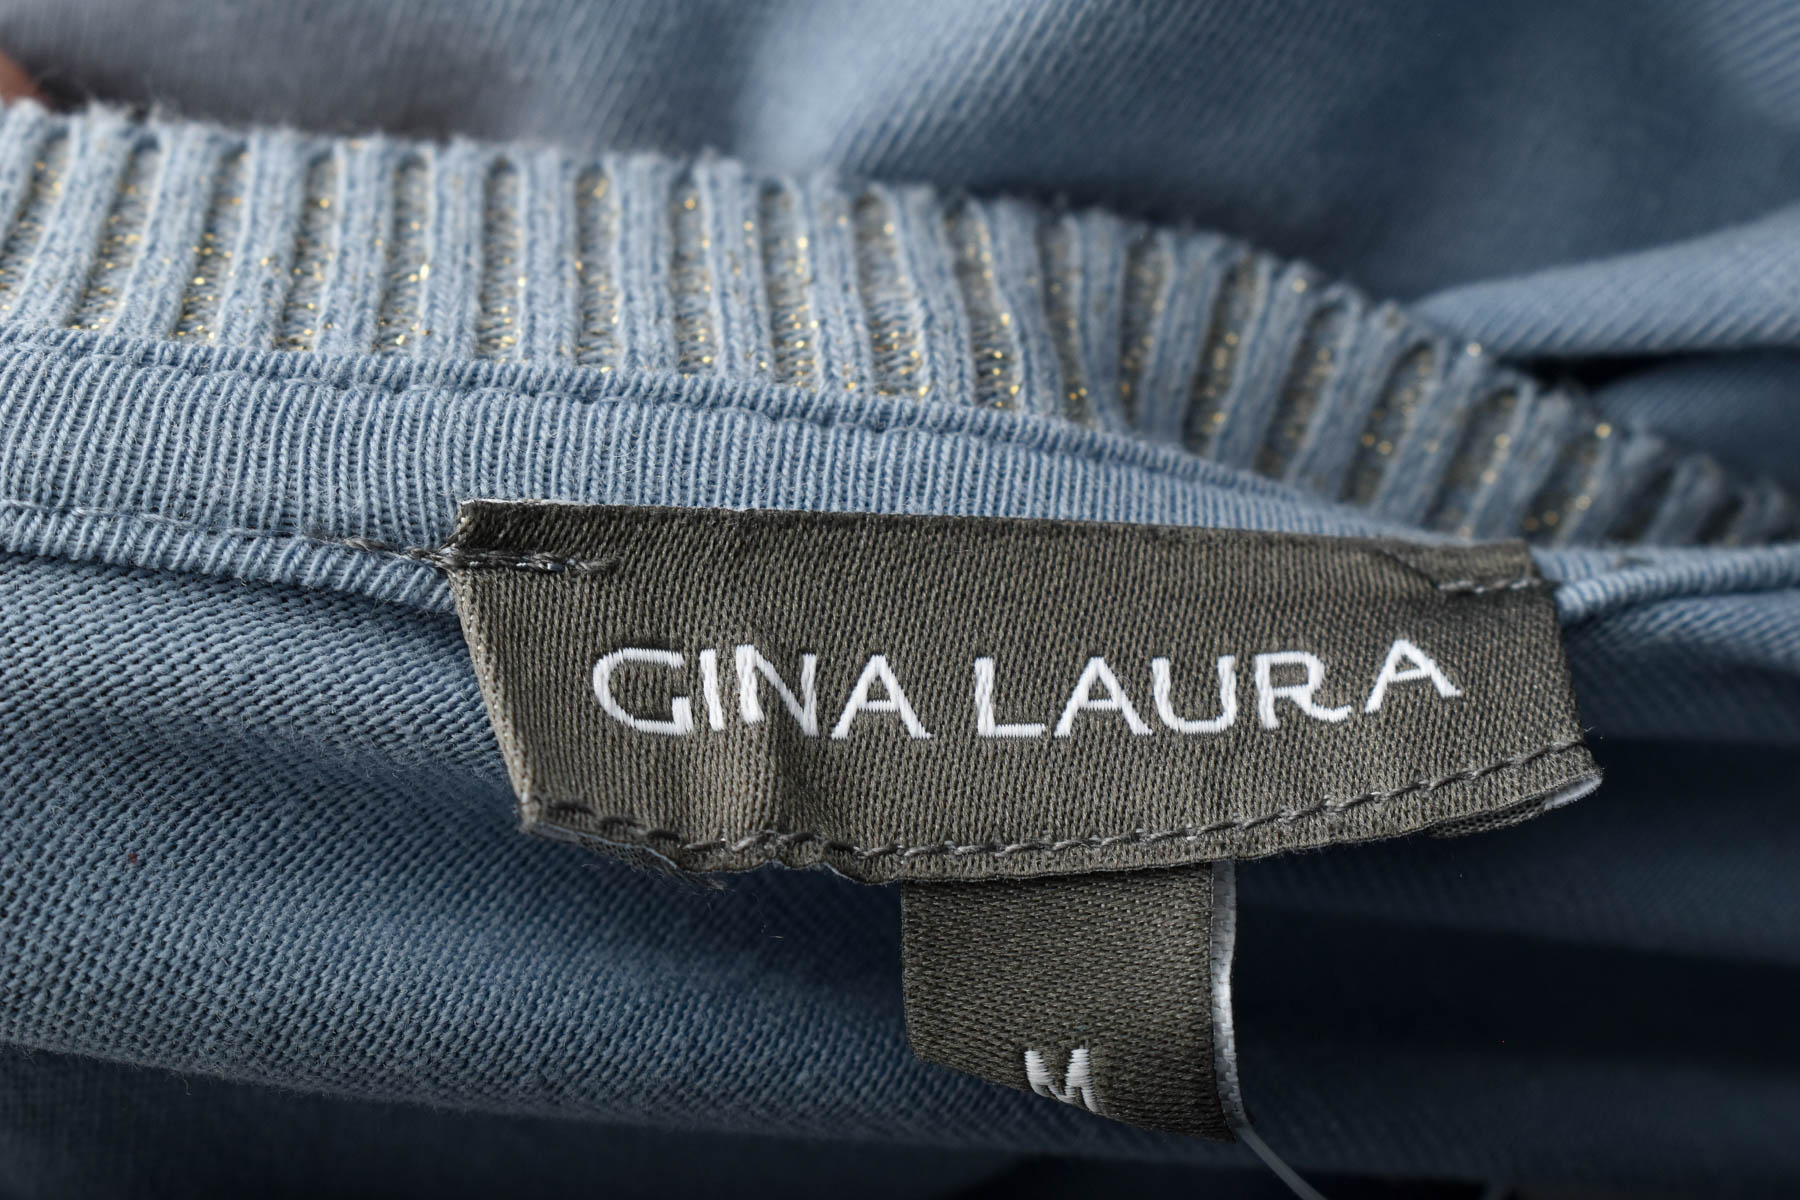 Bluza de damă - Gina Laura - 2